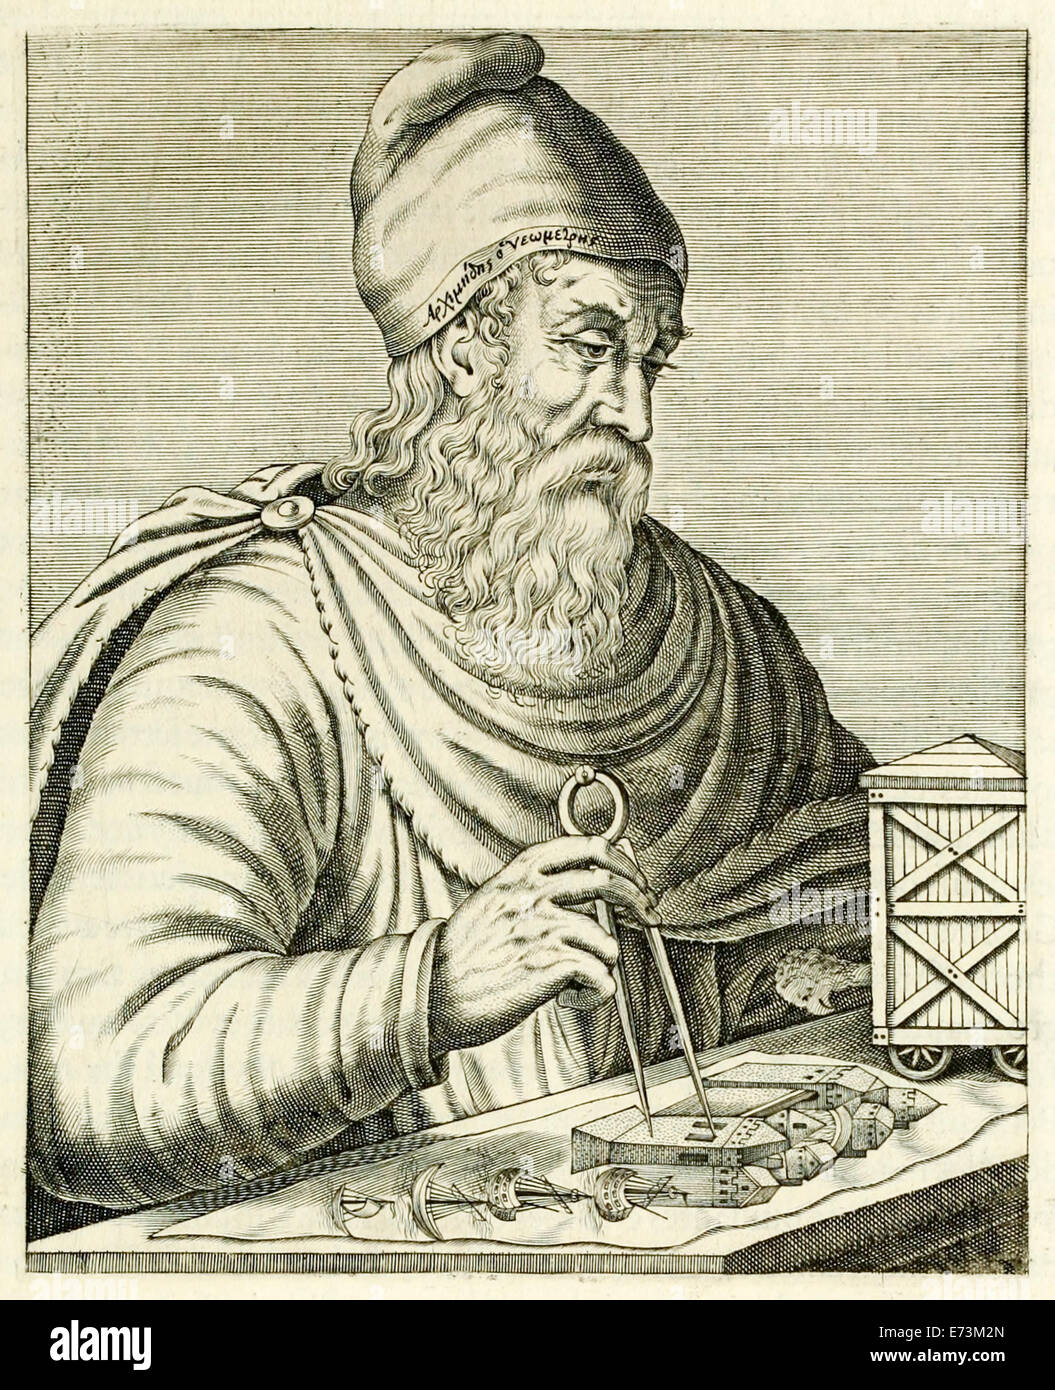 De Syracuse Archimède (287-212BC) Le grec ancien mathématicien, physicien, ingénieur, inventeur, et l'astronome de "vrai"… Portraits d'André Thévet publié en 1594. Voir la description pour plus d'informations. Banque D'Images